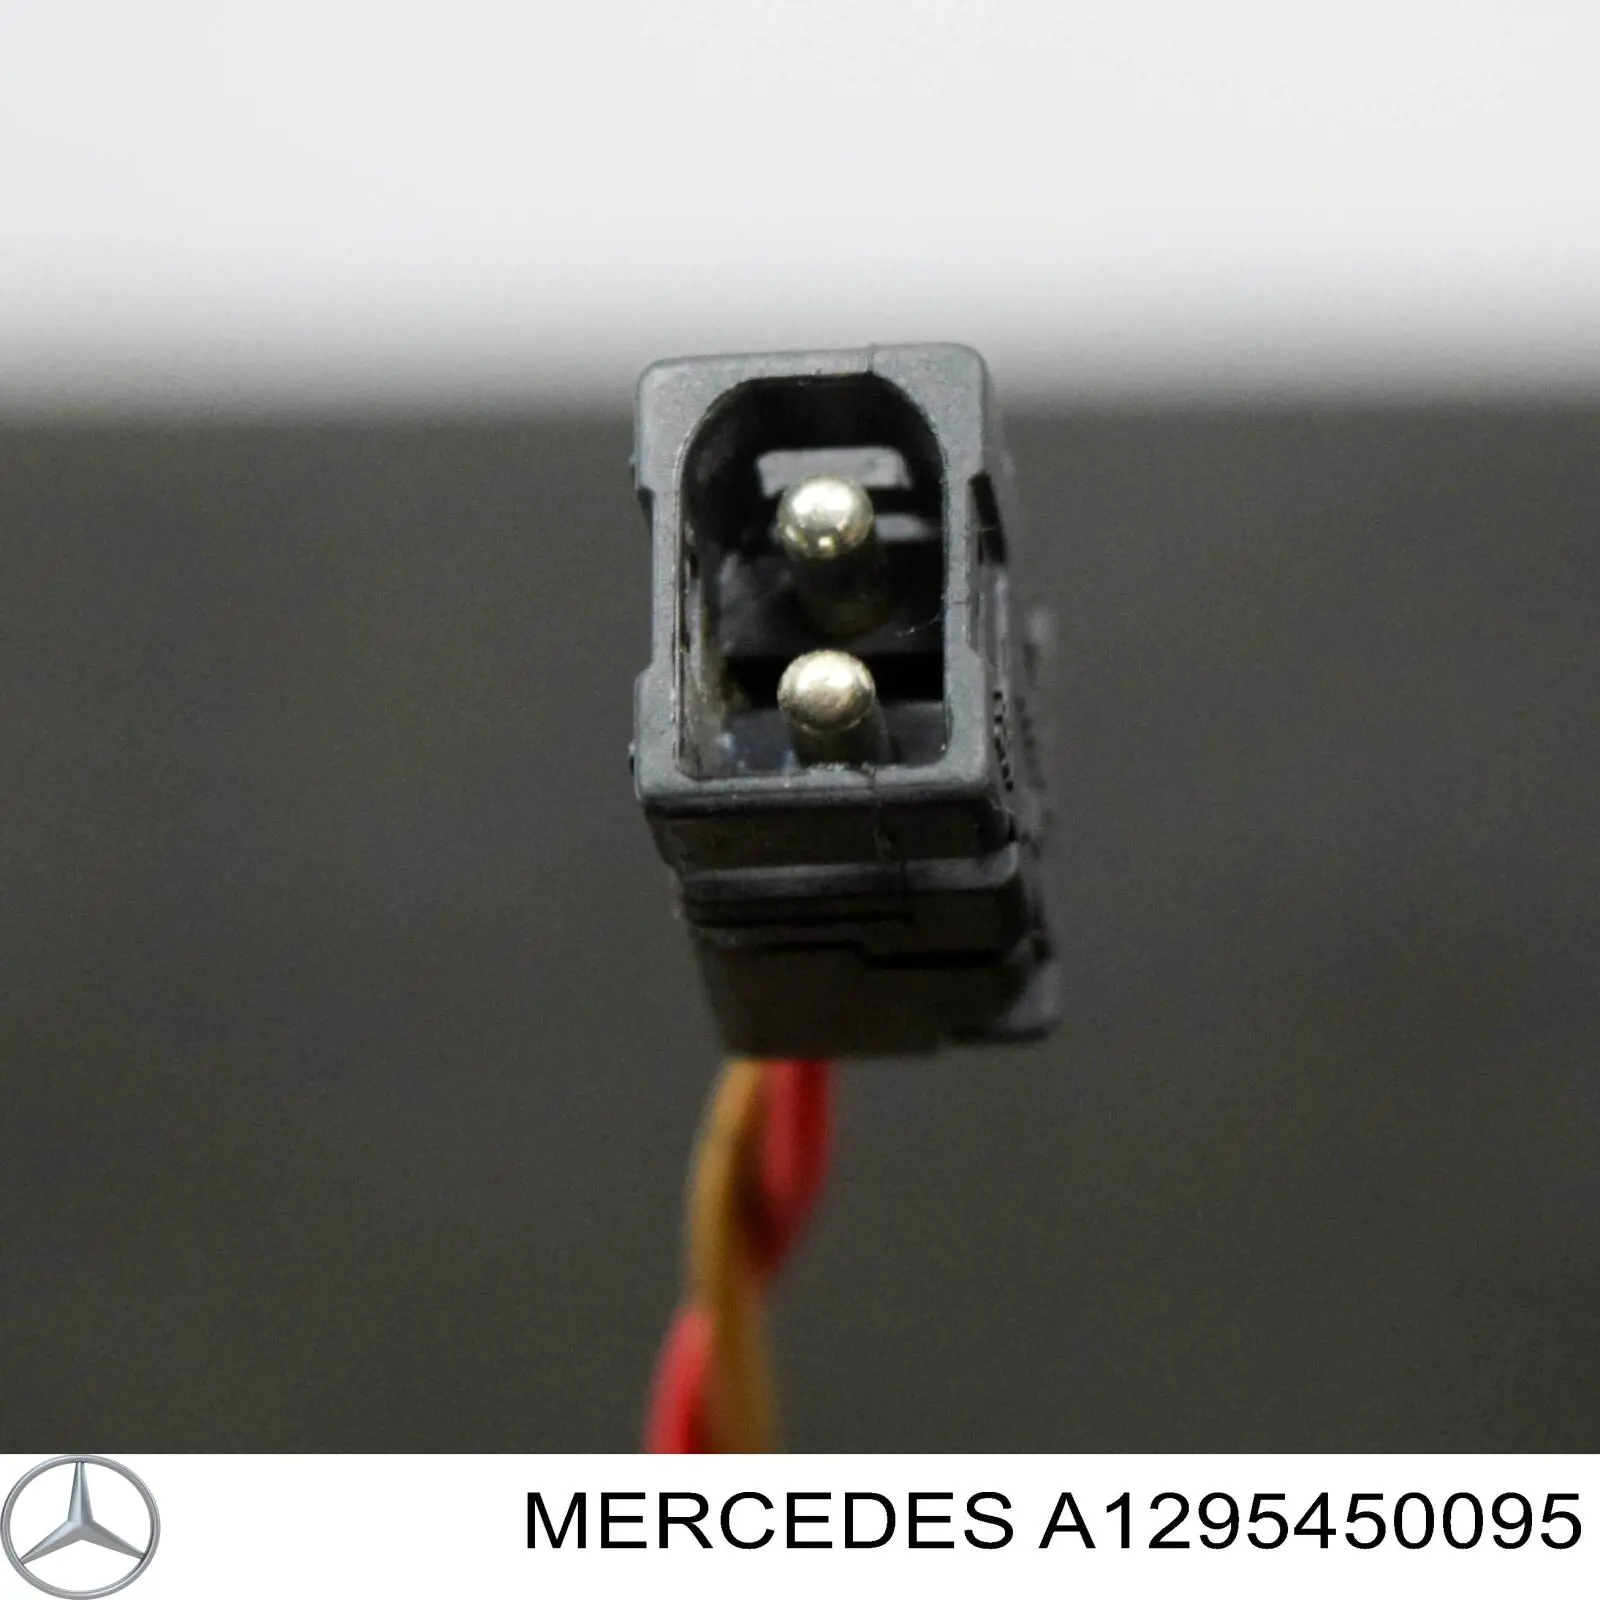 A1295450095 Mercedes вентилятор отсека блока управления